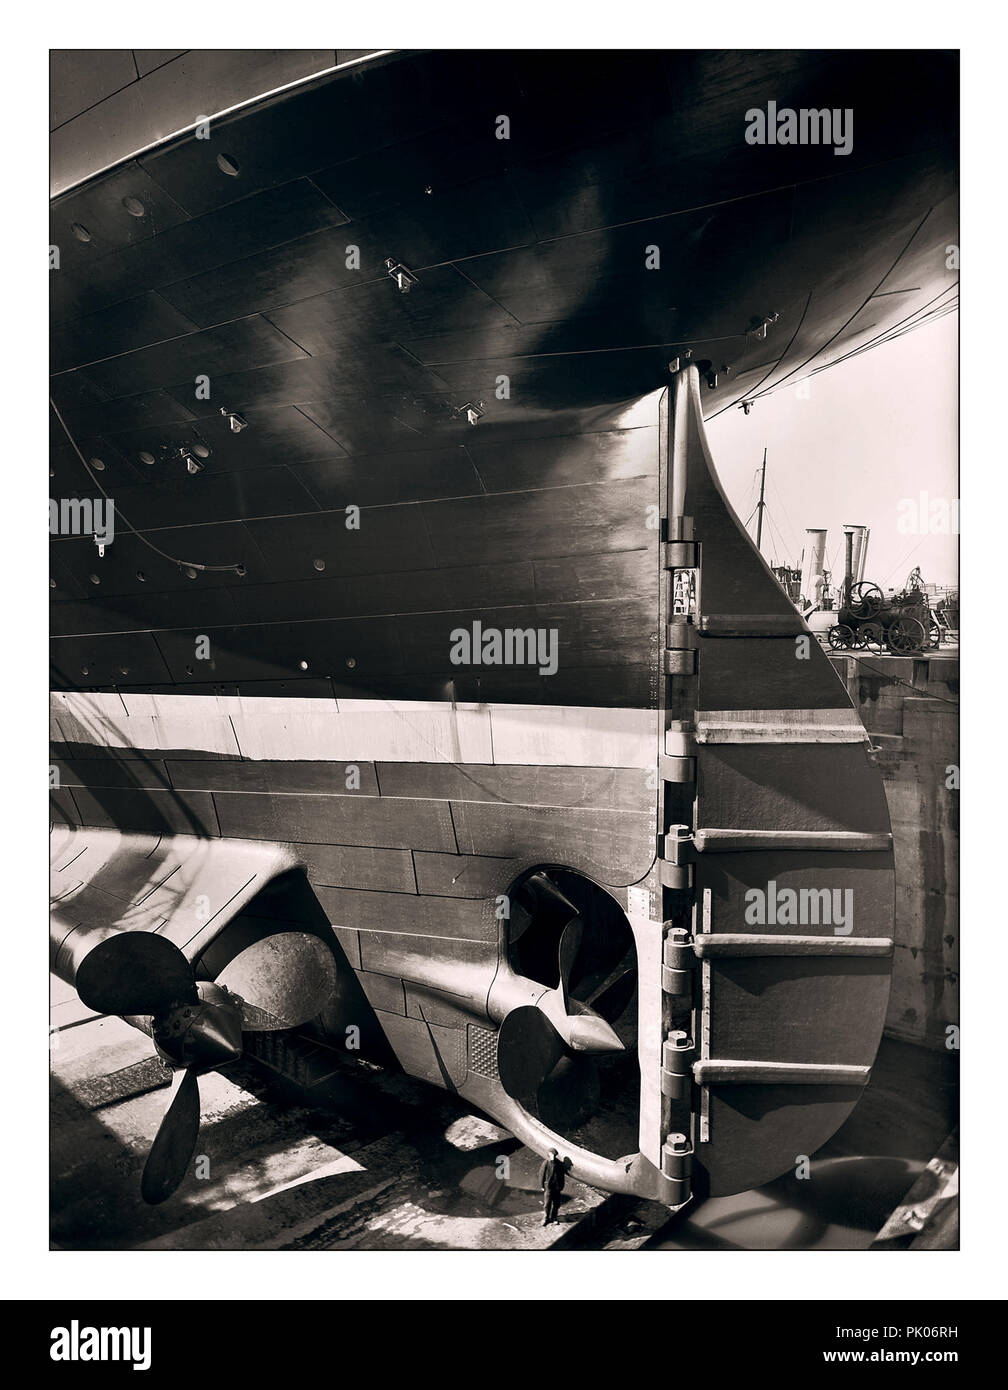 TITANIC STERN CONSTRUCTION TAILLE OUVRIER image historique 1912 du gouvernail et des propulseurs RMS Titanic avec un ouvrier de navire dans l'immense chantier de construction de cale sèche ajoutant de l'échelle à l'énorme chantier naval Ocean Liner Harland et Wolff Belfast UK Banque D'Images